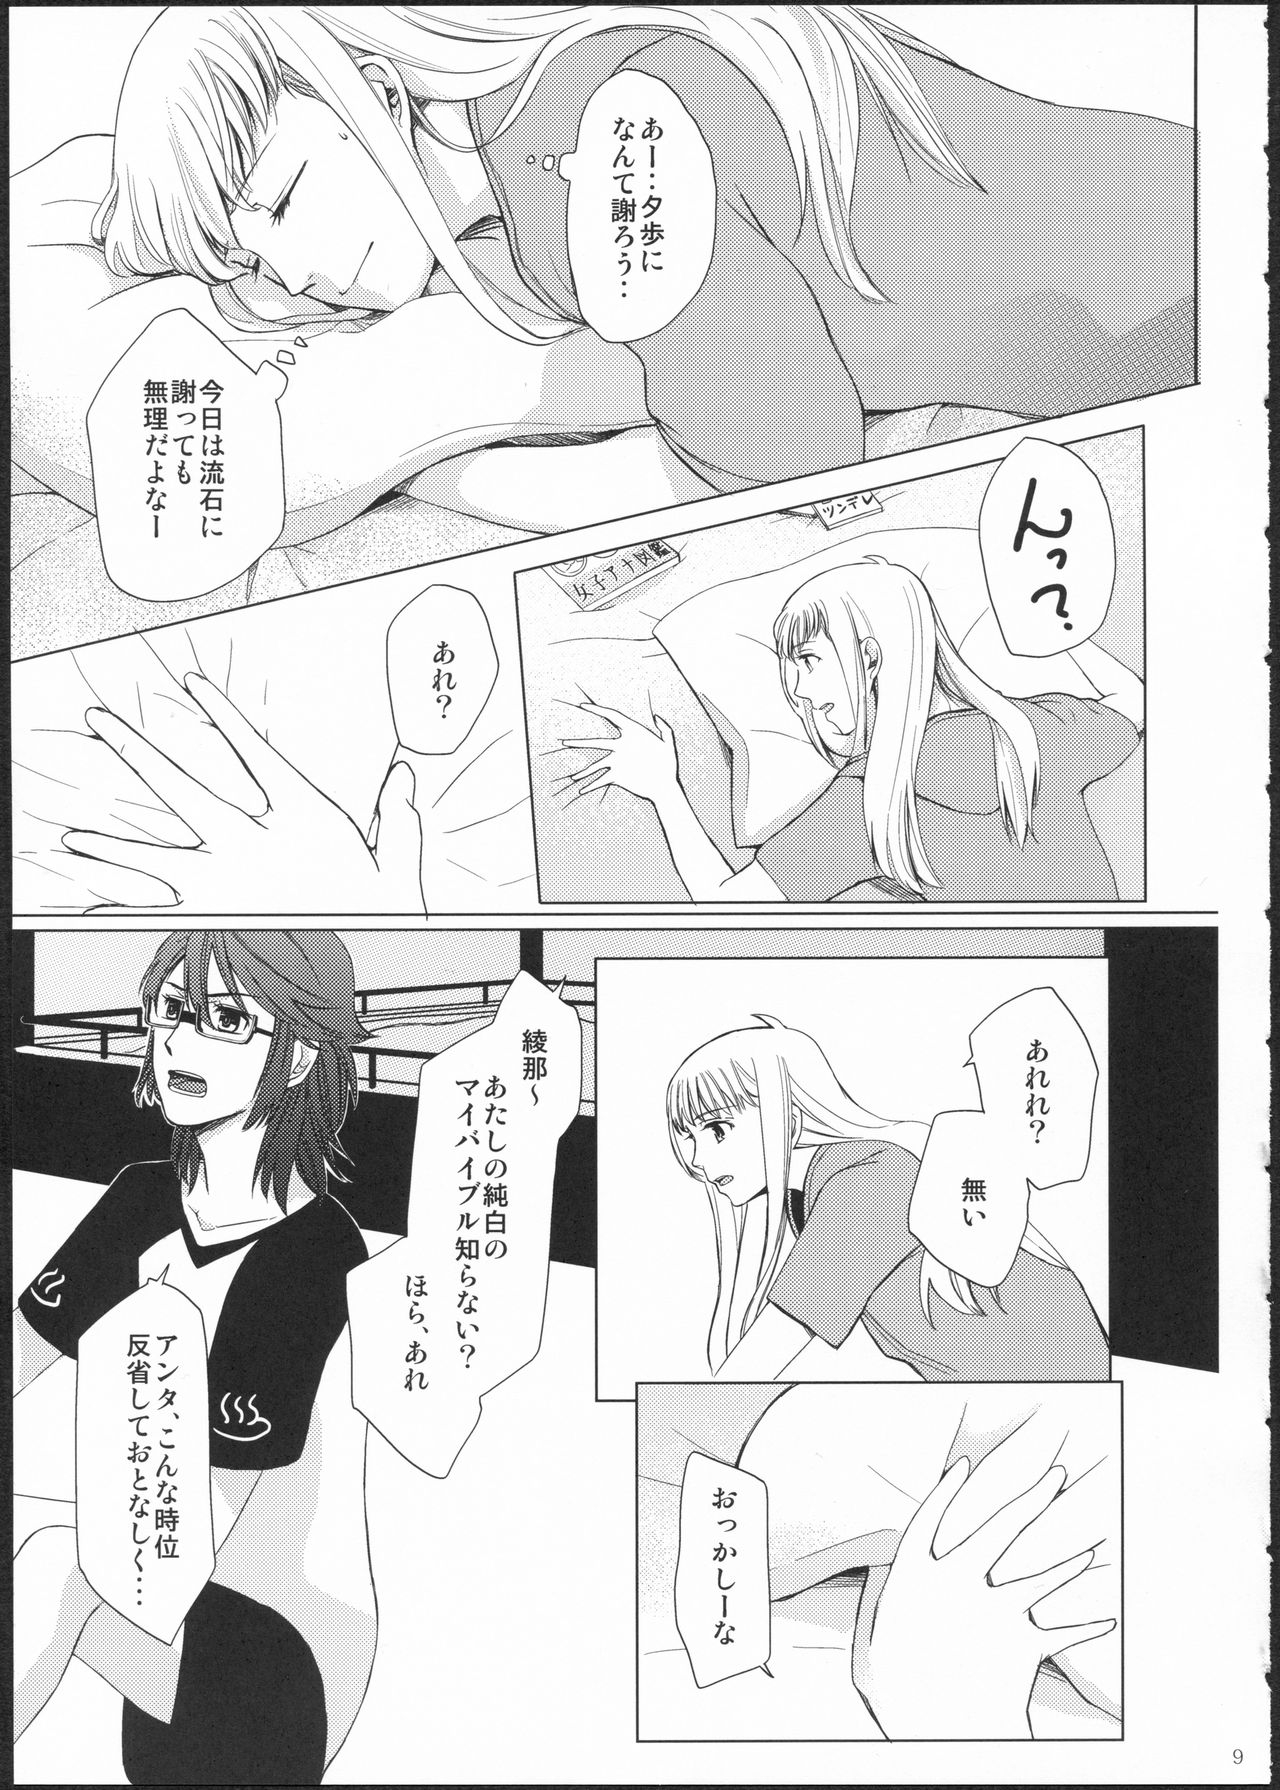 (GirlsLoveFestival11) [No.3 (Kamonasu, Sakuraba, Yuyuki)] METEORA (Hayate x Blade) 7